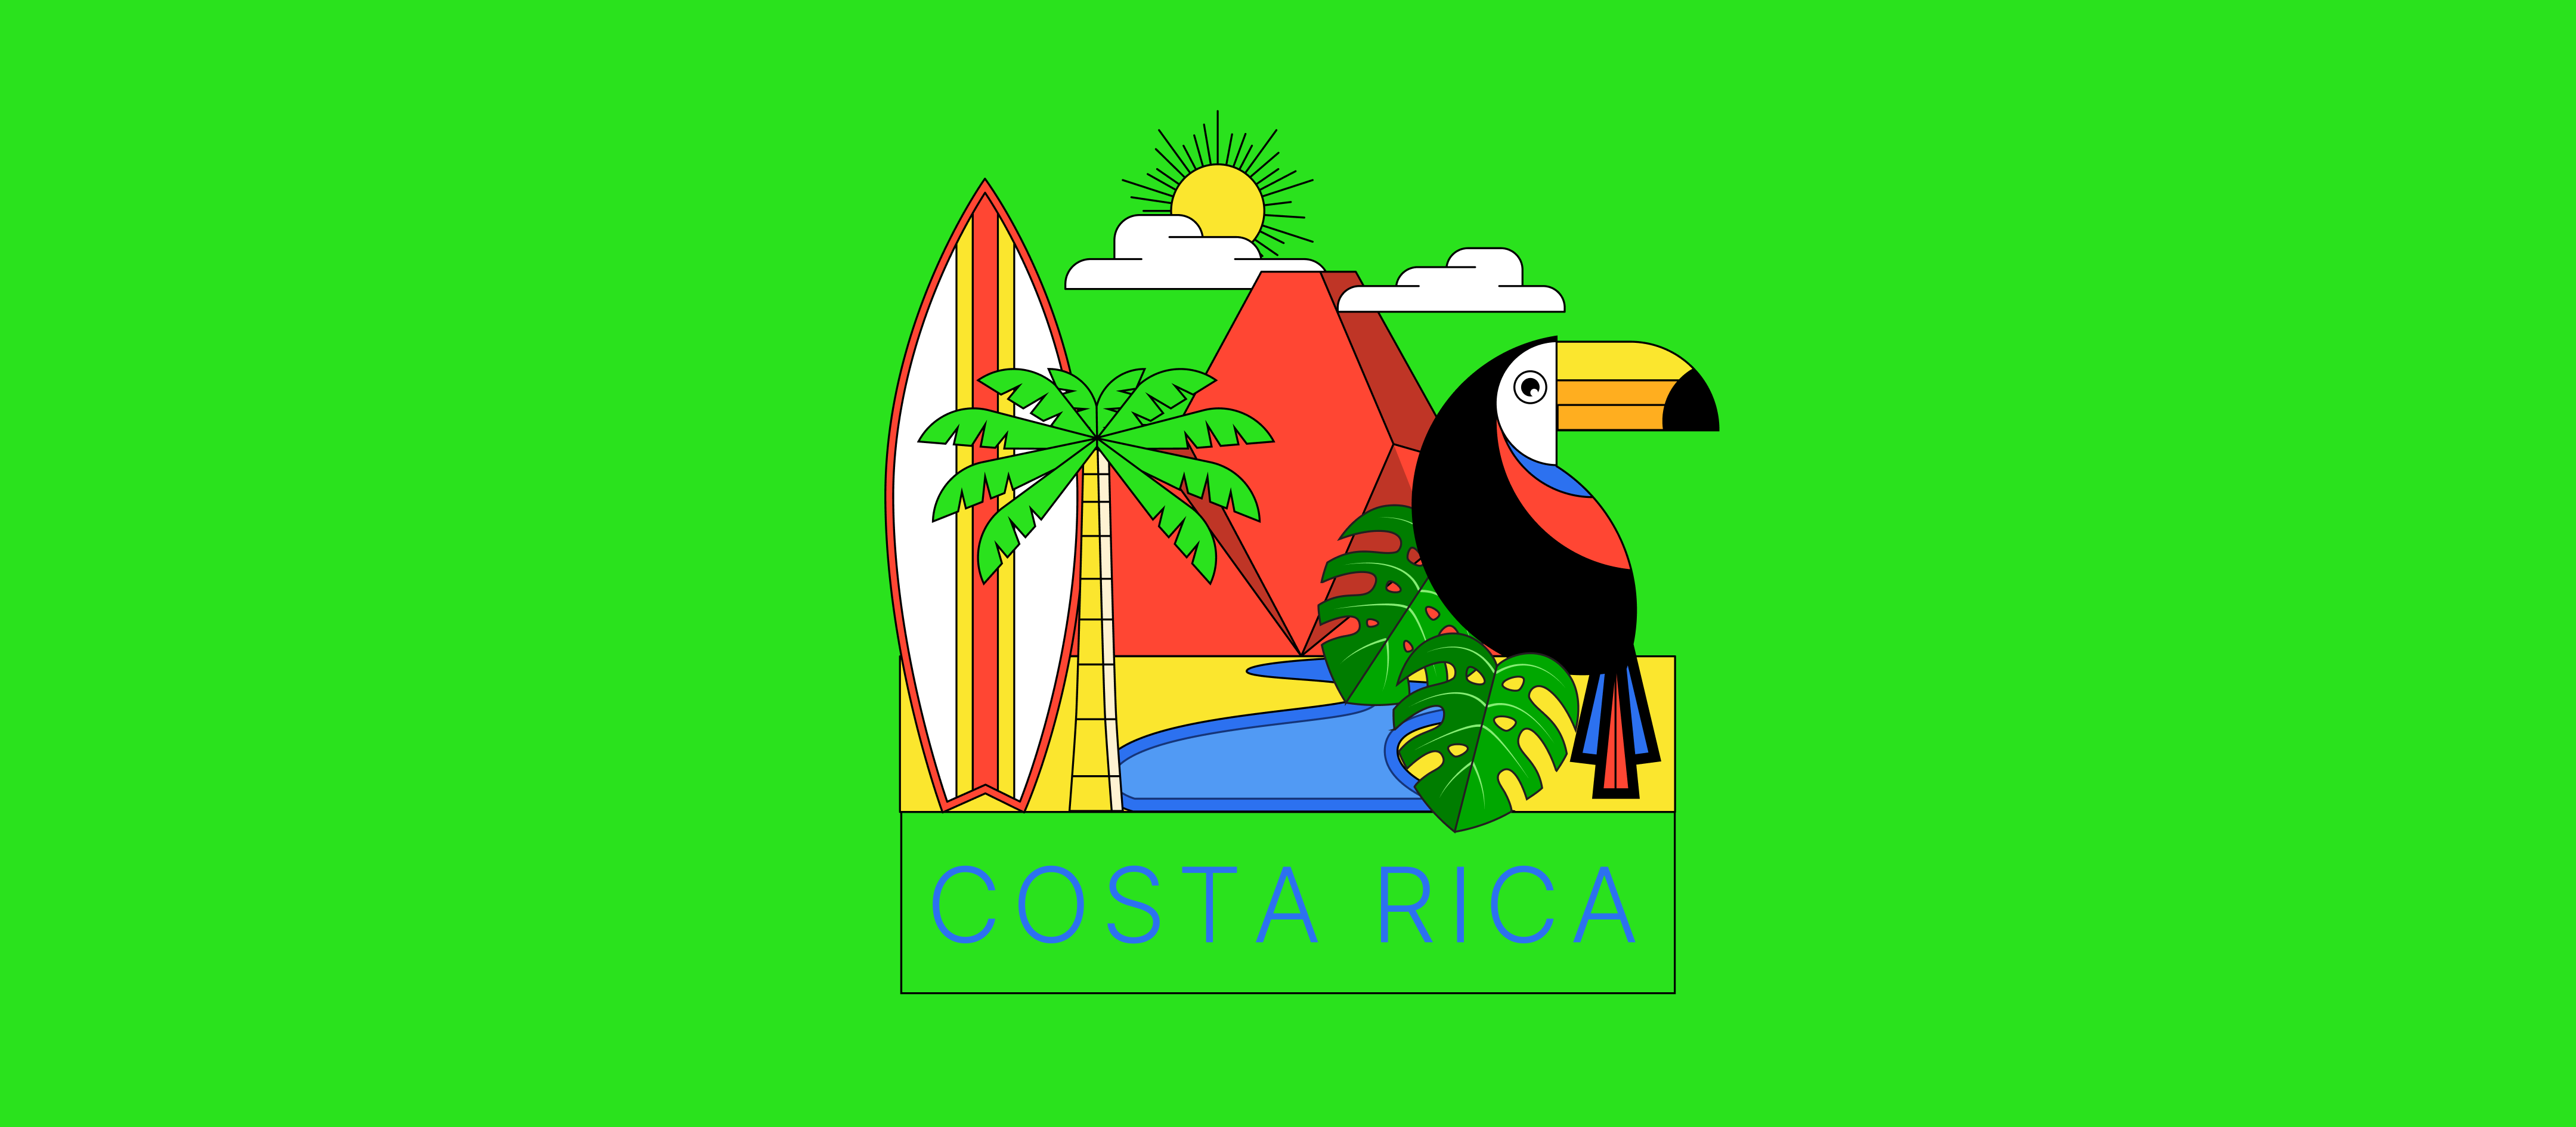 Cómo crecer tu empresa en Costa Rica 3x más rápido